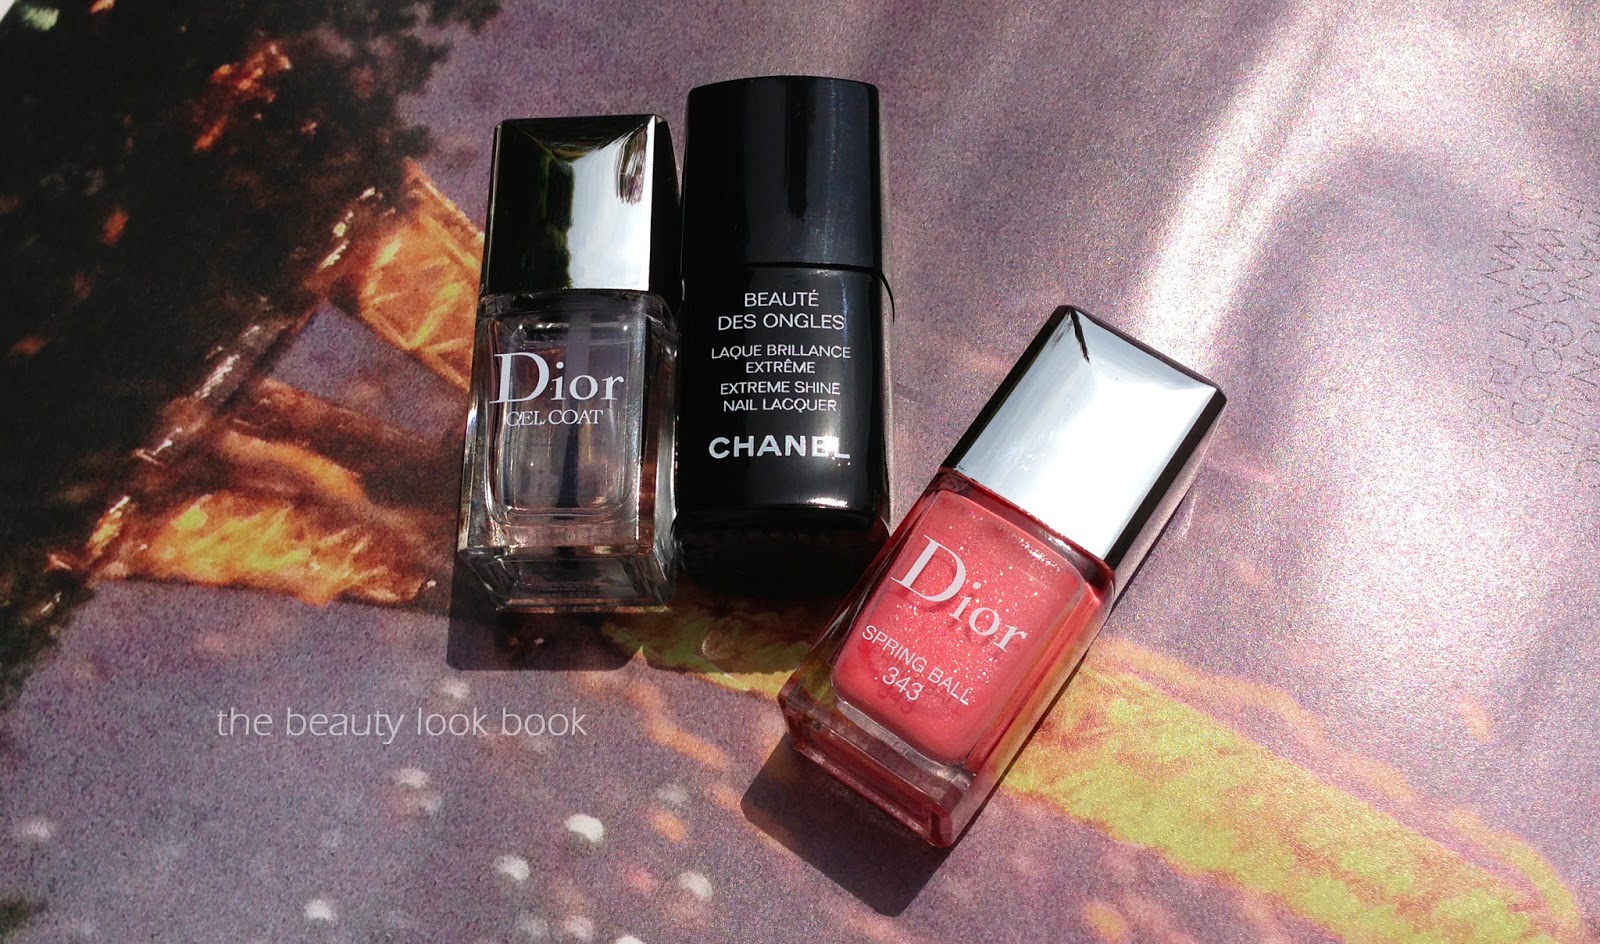 Top Coats: Dior Gel Coat vs. Chanel Laque Brilliance Extreme - The Look Book